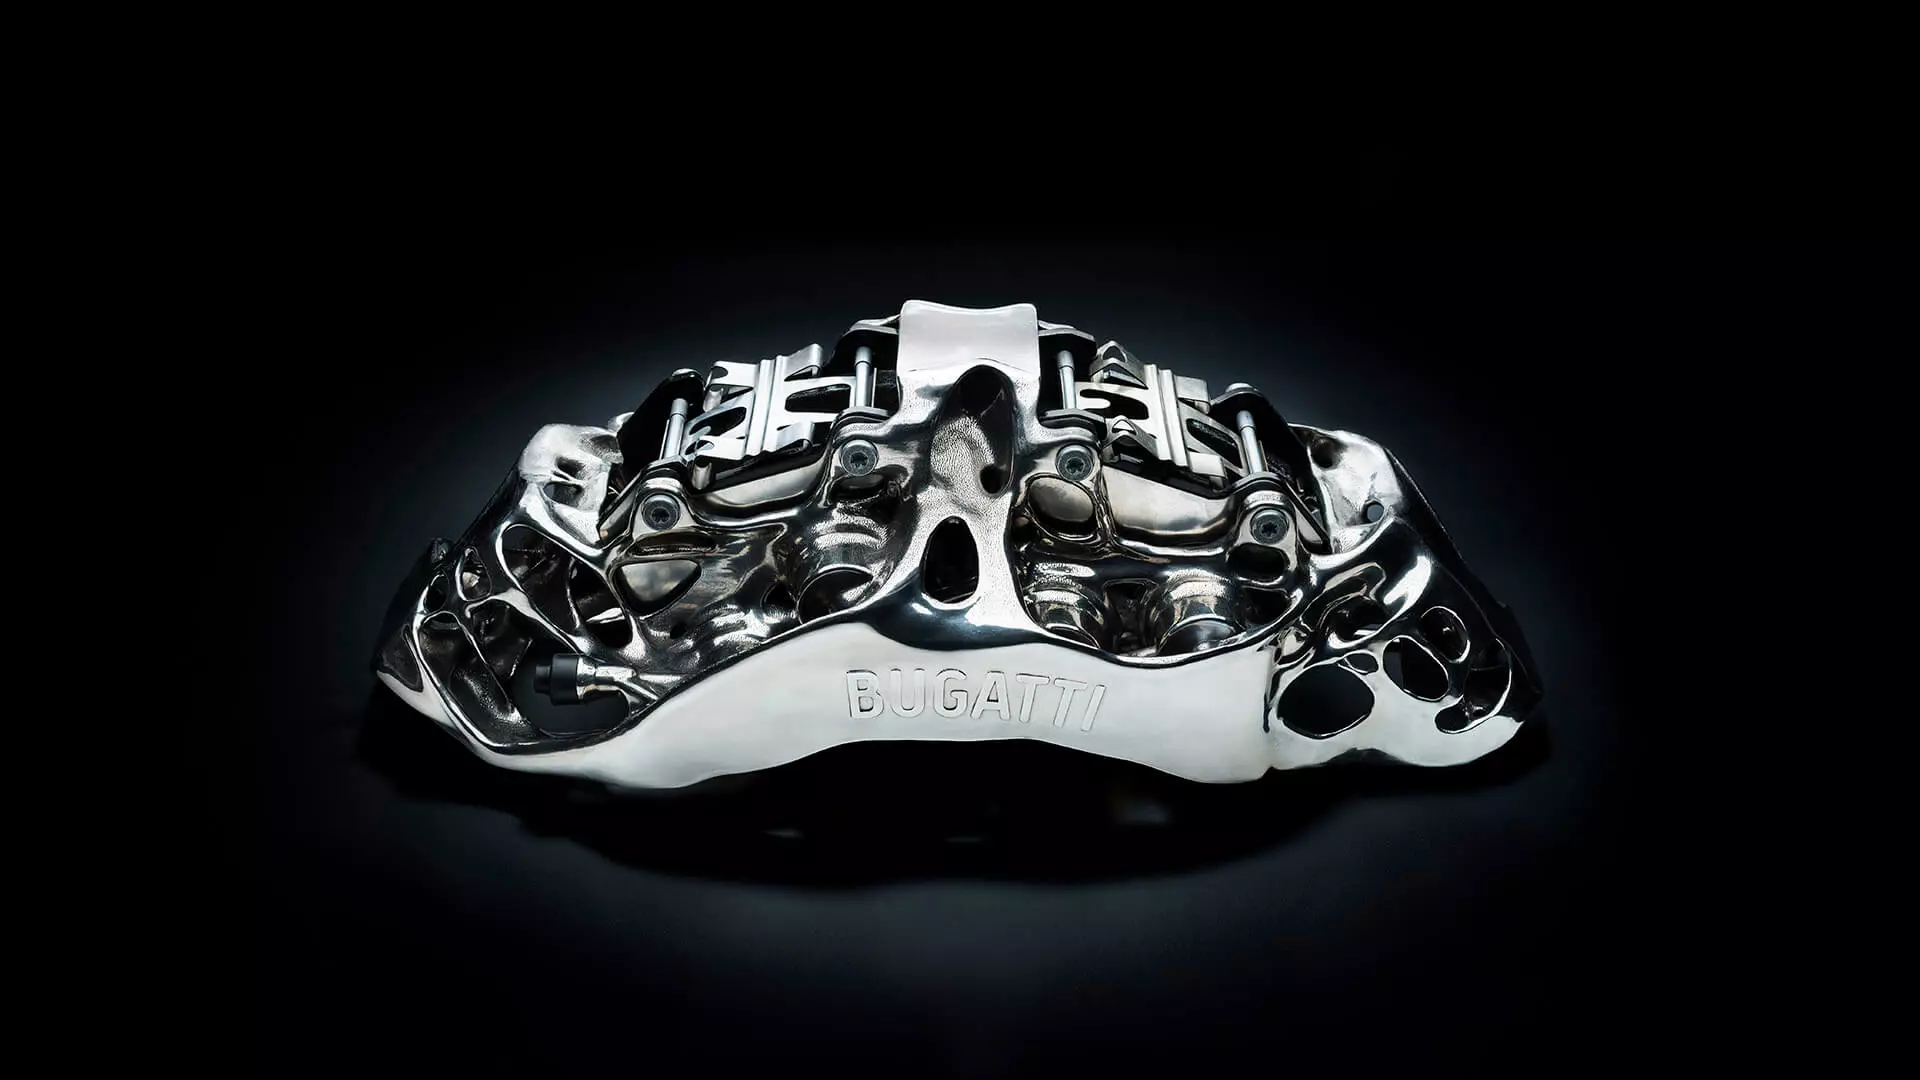 Bugatti Chiron: pinza de freo de titanio, impresión 3D